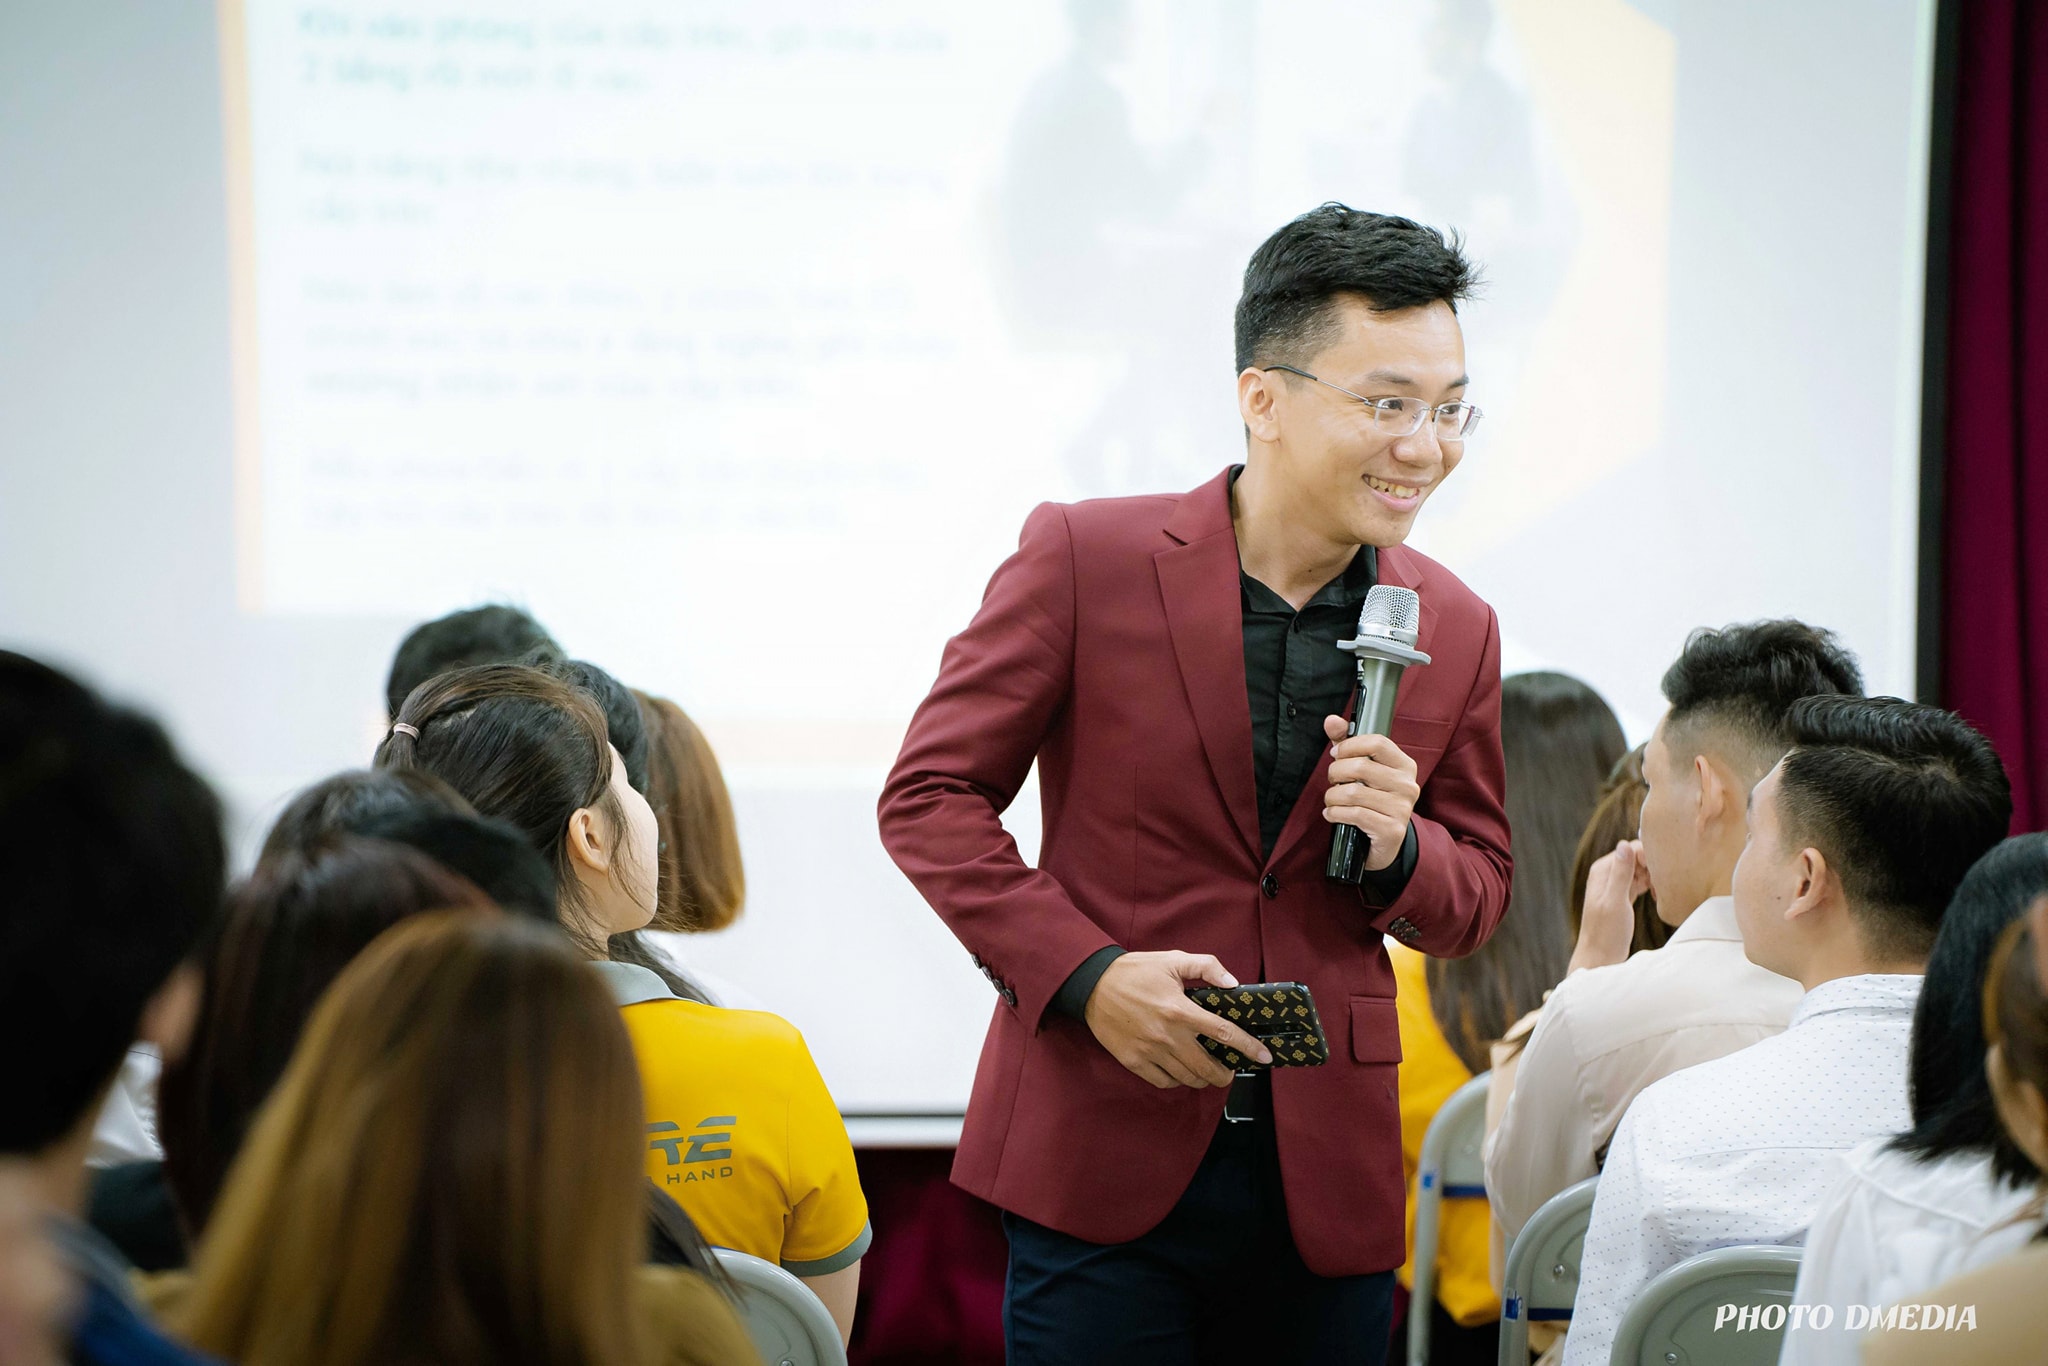 Kỹ Năng Ứng Xử Trong Môi Trường Doanh Nghiệp - Cty CP DStore Hồ Chí Minh